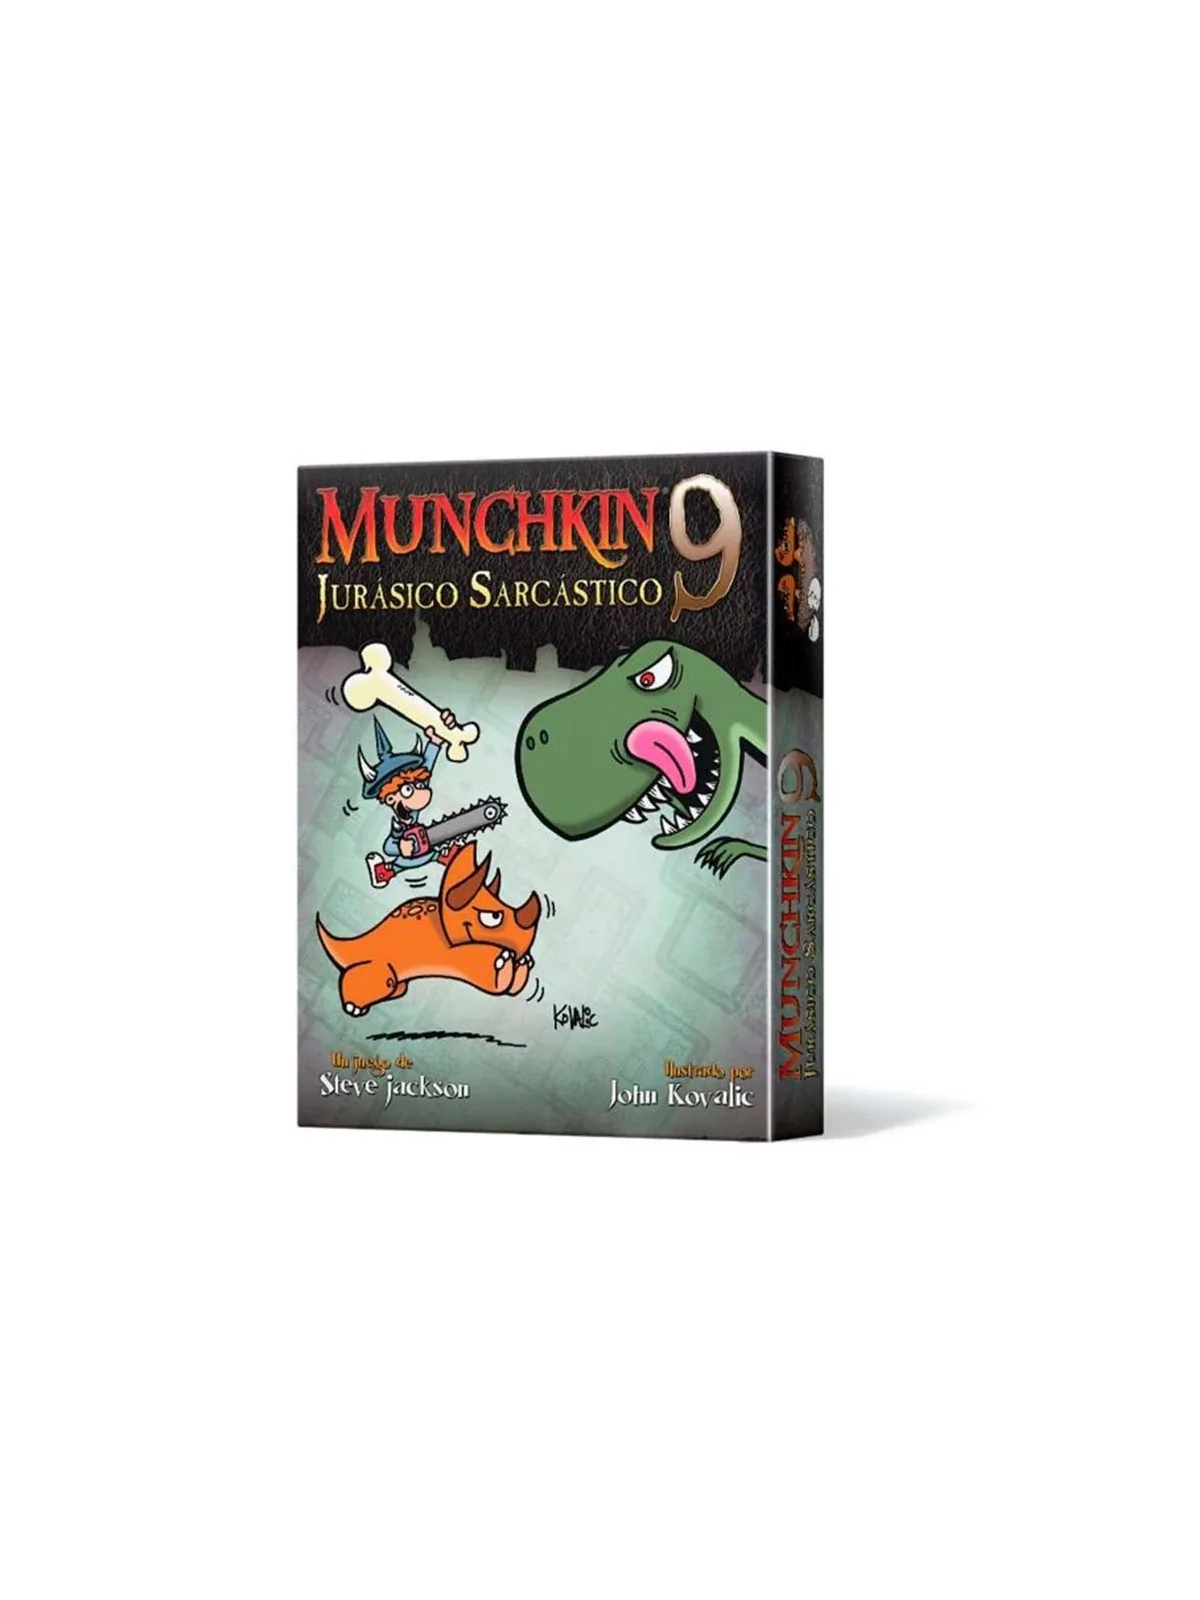 Comprar Munchkin 9: Jurásico Sarcástico barato al mejor precio 14,39 €